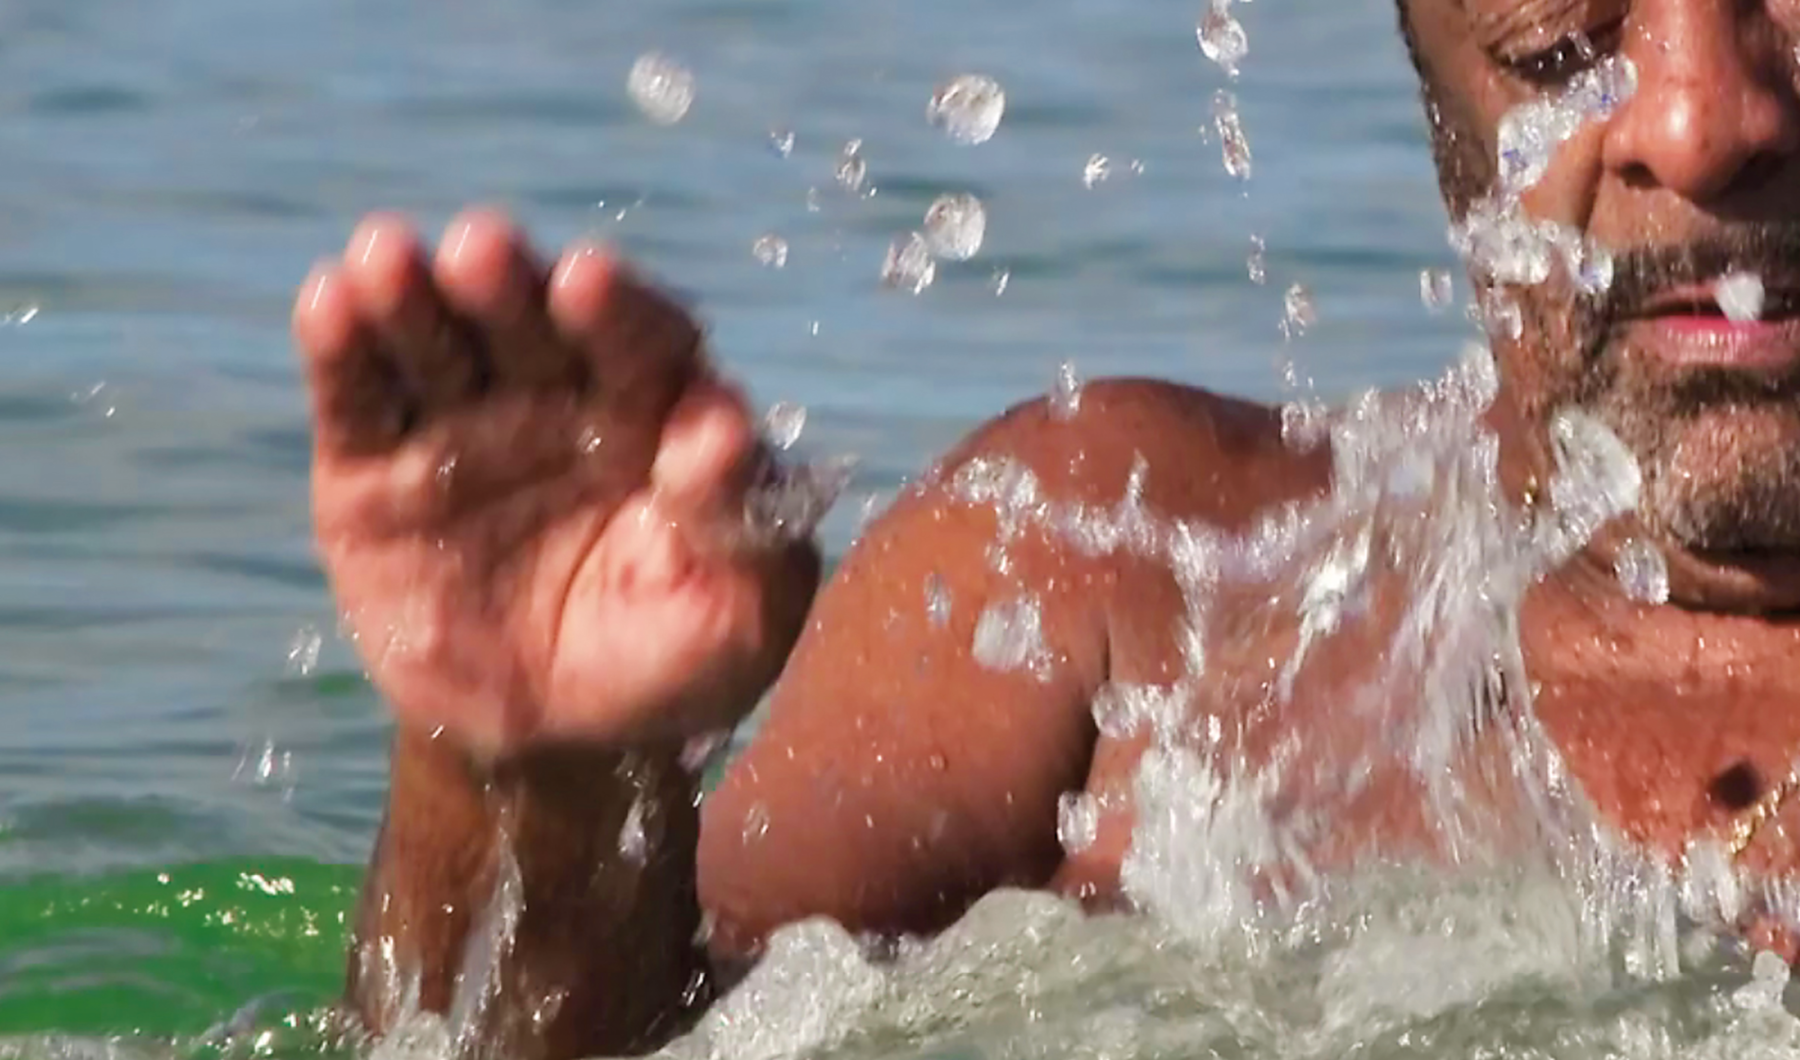 Fotografia. Detalhe do busto de um homem negro, de barba,  dentro do mar. Ele está com a mão direita espalmada na direção da superfície da água, que espira formando gotículas.